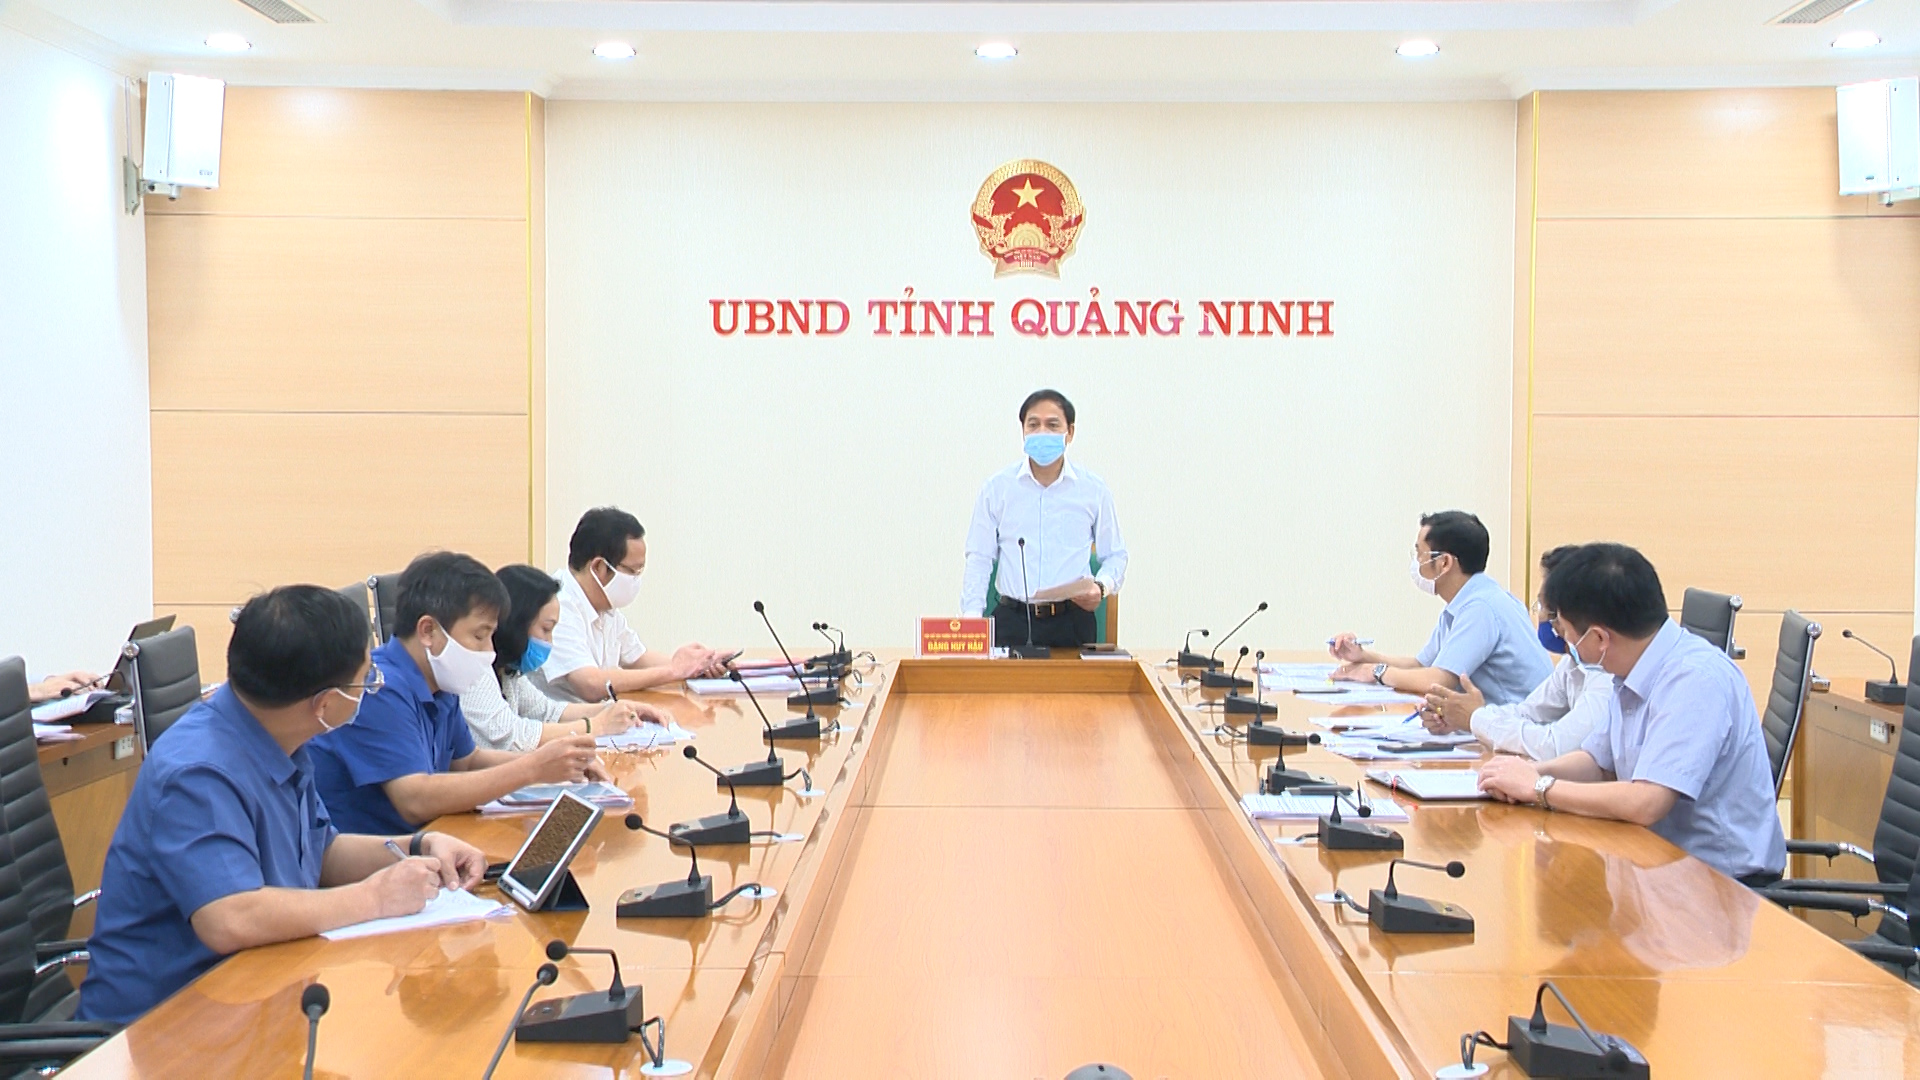 Đồng chí Đặng Huy Hậu, Phó Chủ tịch Thường trực UBND tỉnh Quảng Ninh phát biểu tại hội nghị